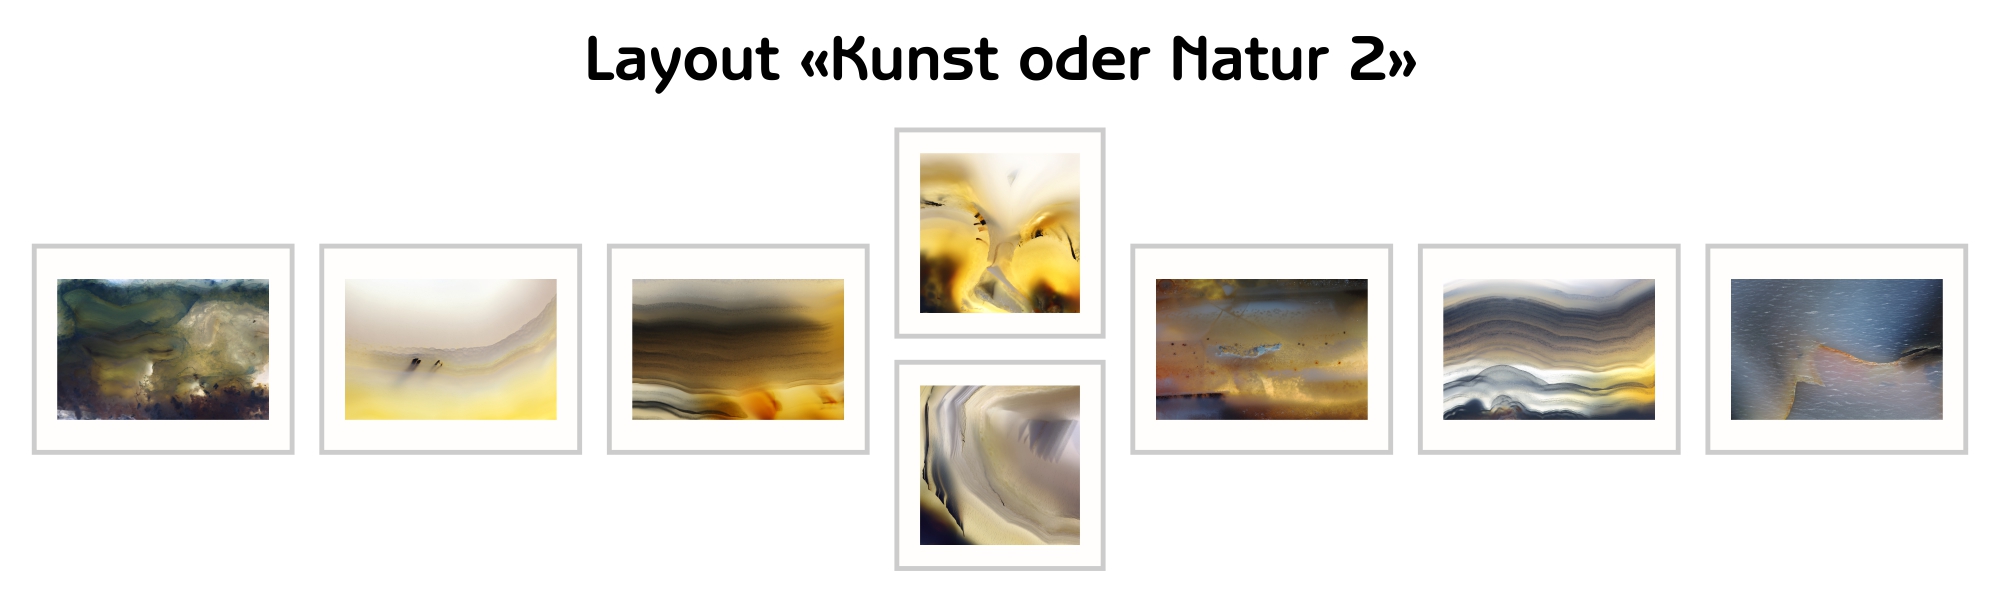 image-10217771-Layout-Kunst-oder-Natur-2-8f14e.jpg